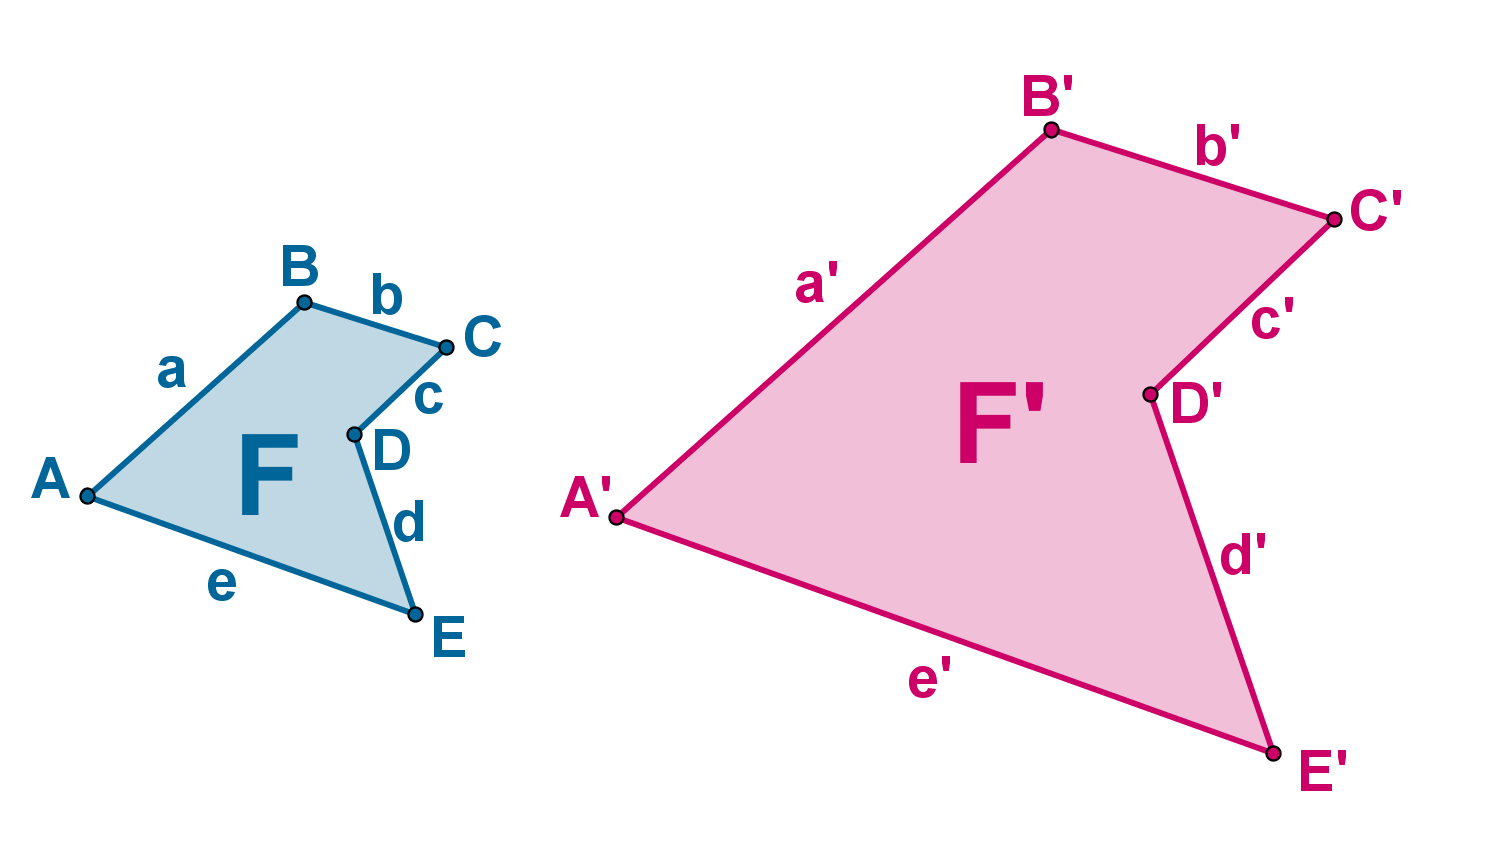 figuras geométricas clasificación